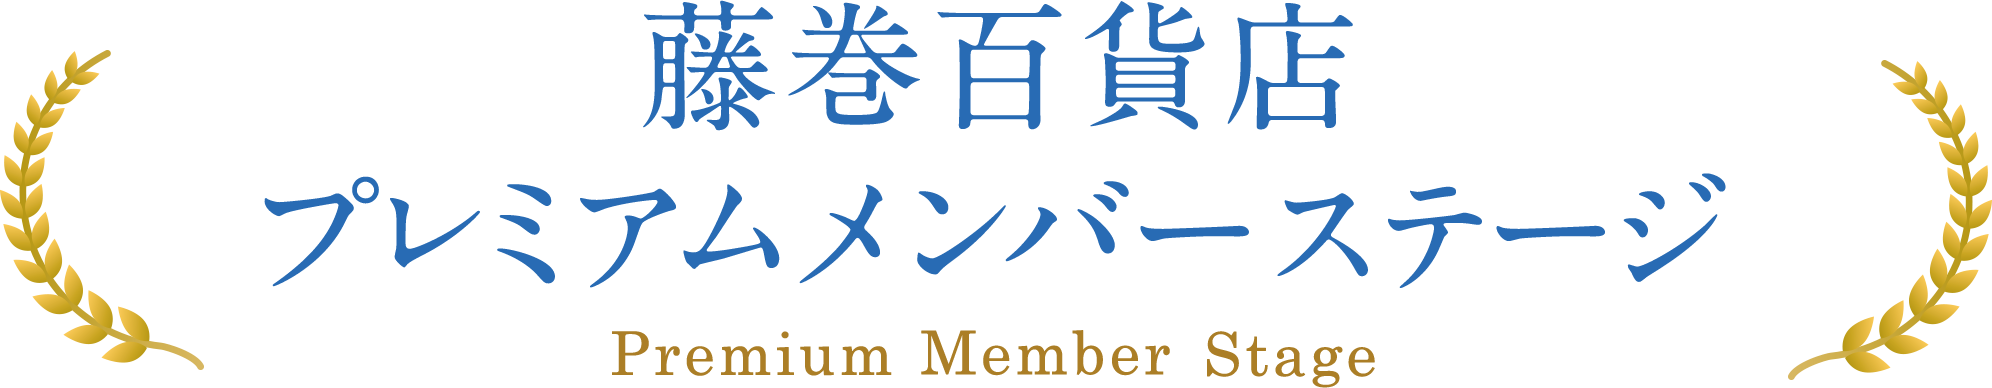 藤巻百貨店プレミアムメンバーステージ Premium Member Stage